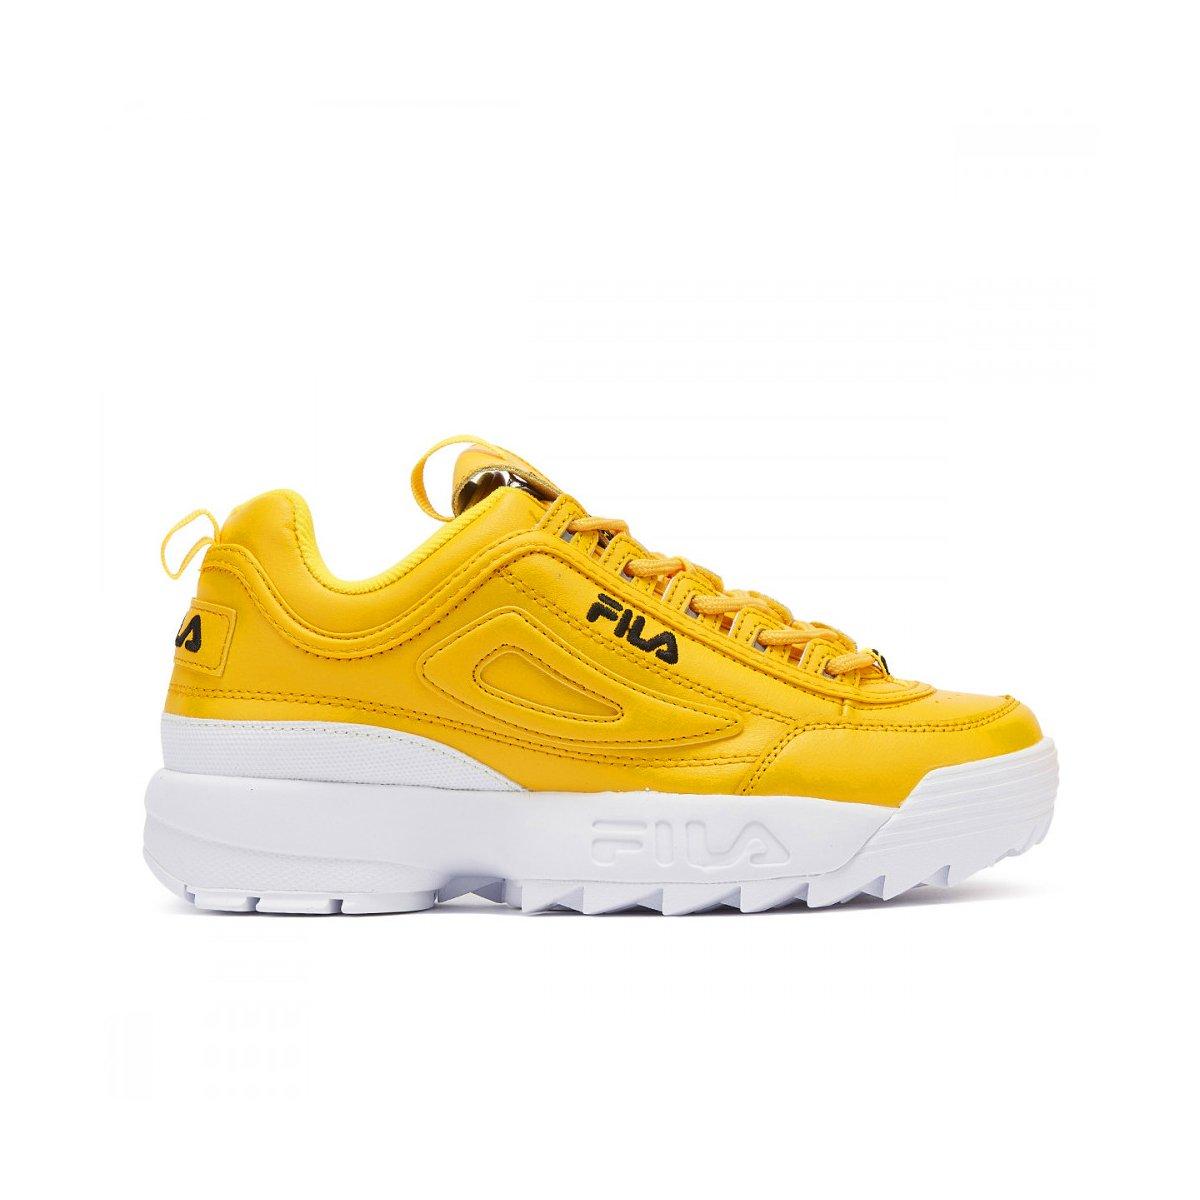 fila shoes yellow colour